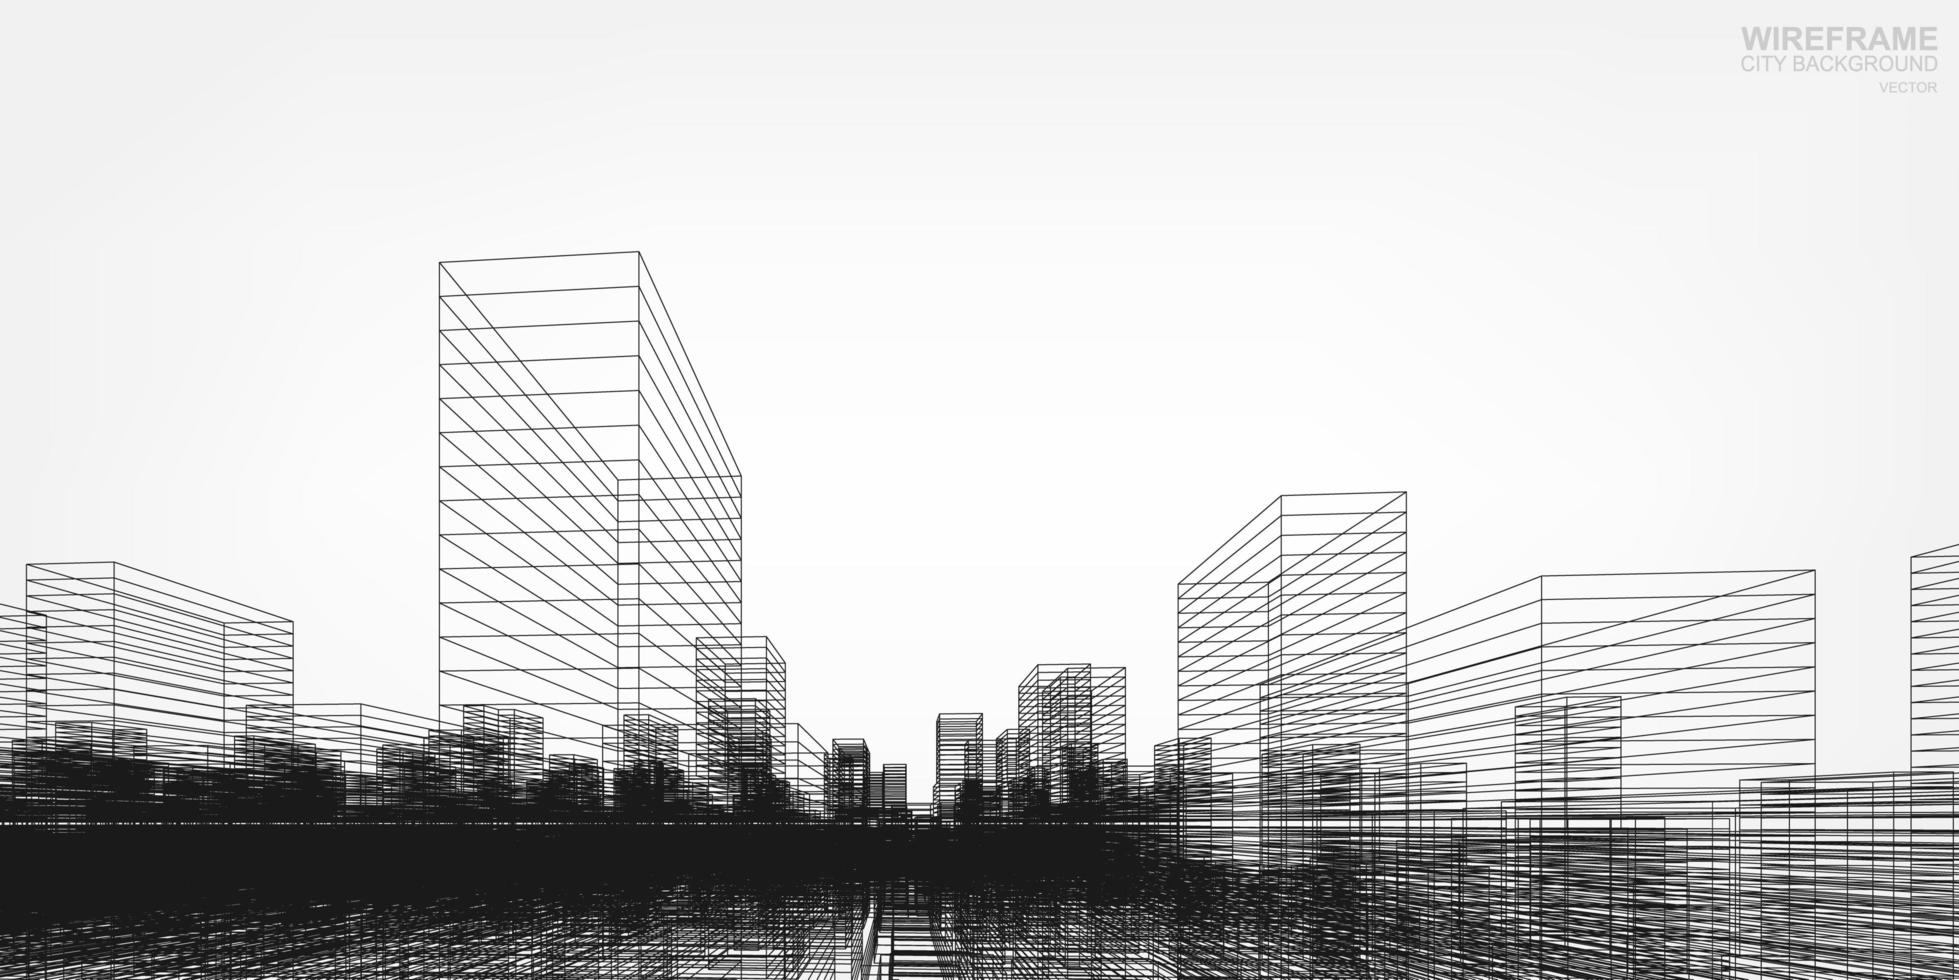 ciudad de estructura metálica en perspectiva vector